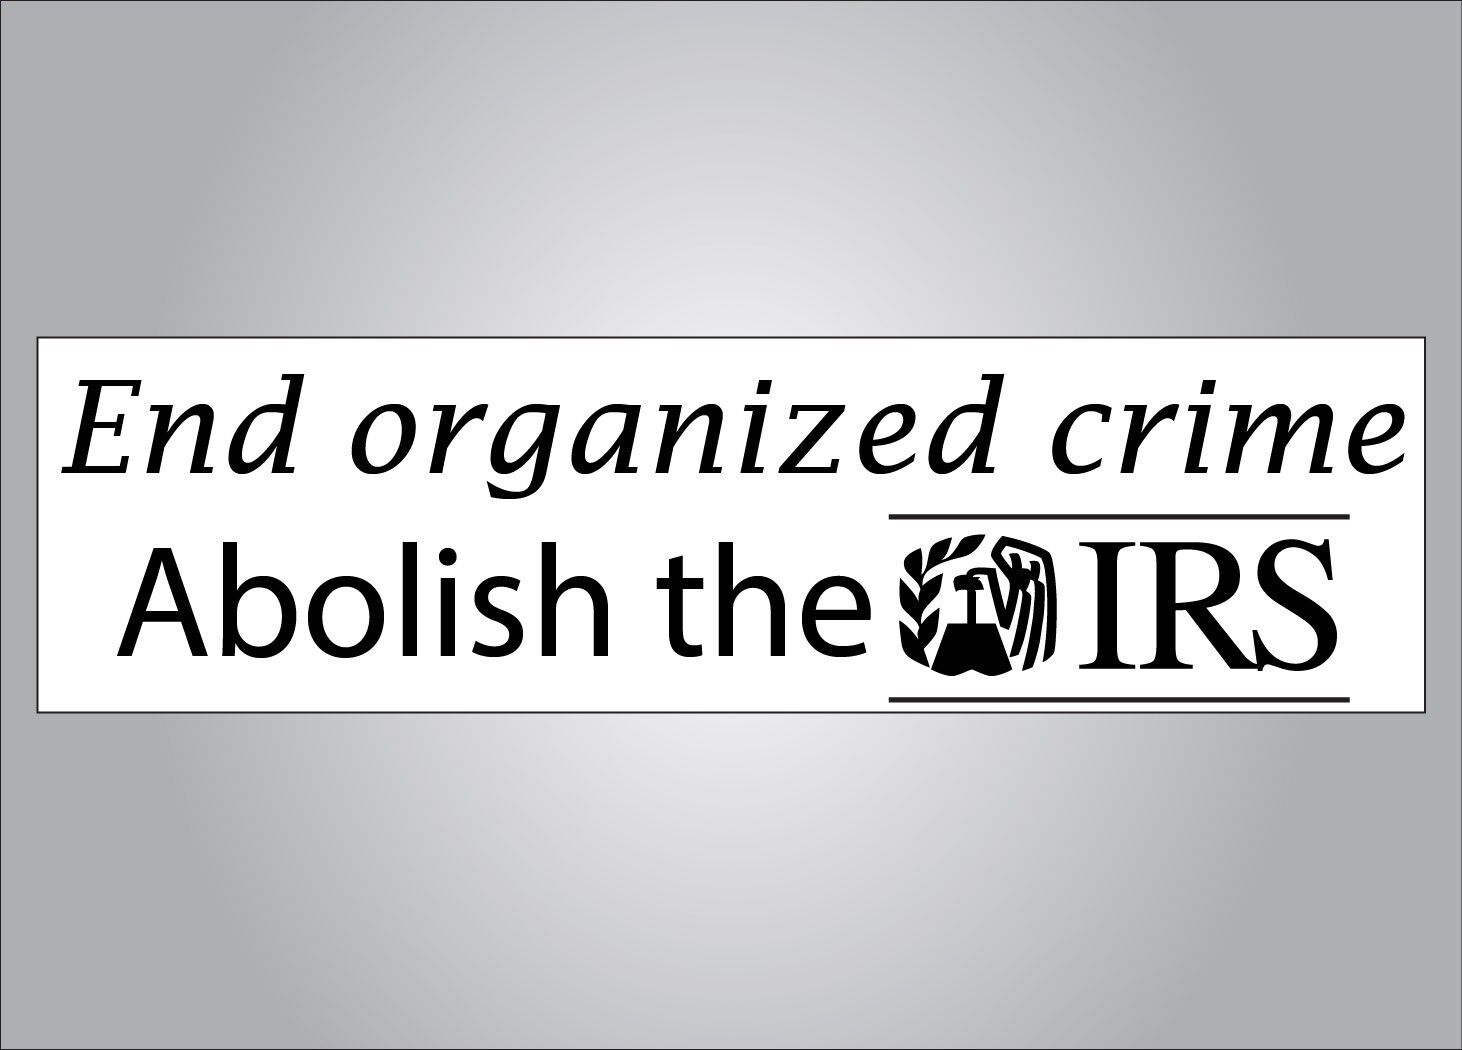 Political bumper sticker - End organized crime no more IRS- crude humor anti IRS